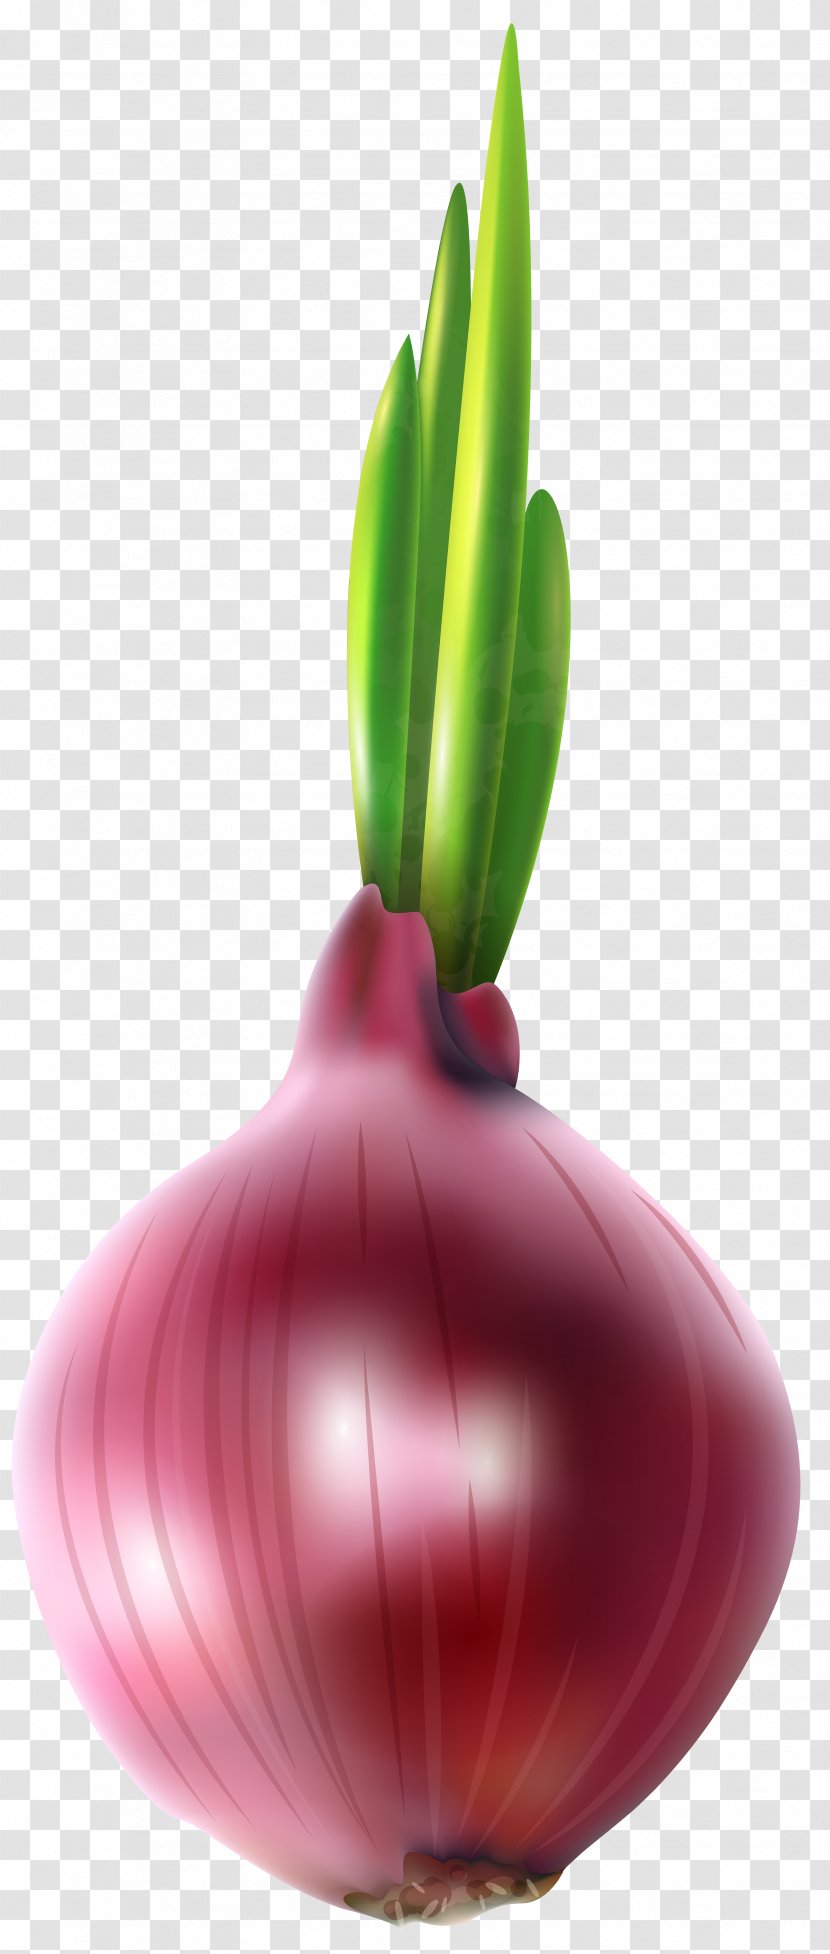 Onion Computer File - Allium Fistulosum - Red Free Clip Art Image Transparent PNG